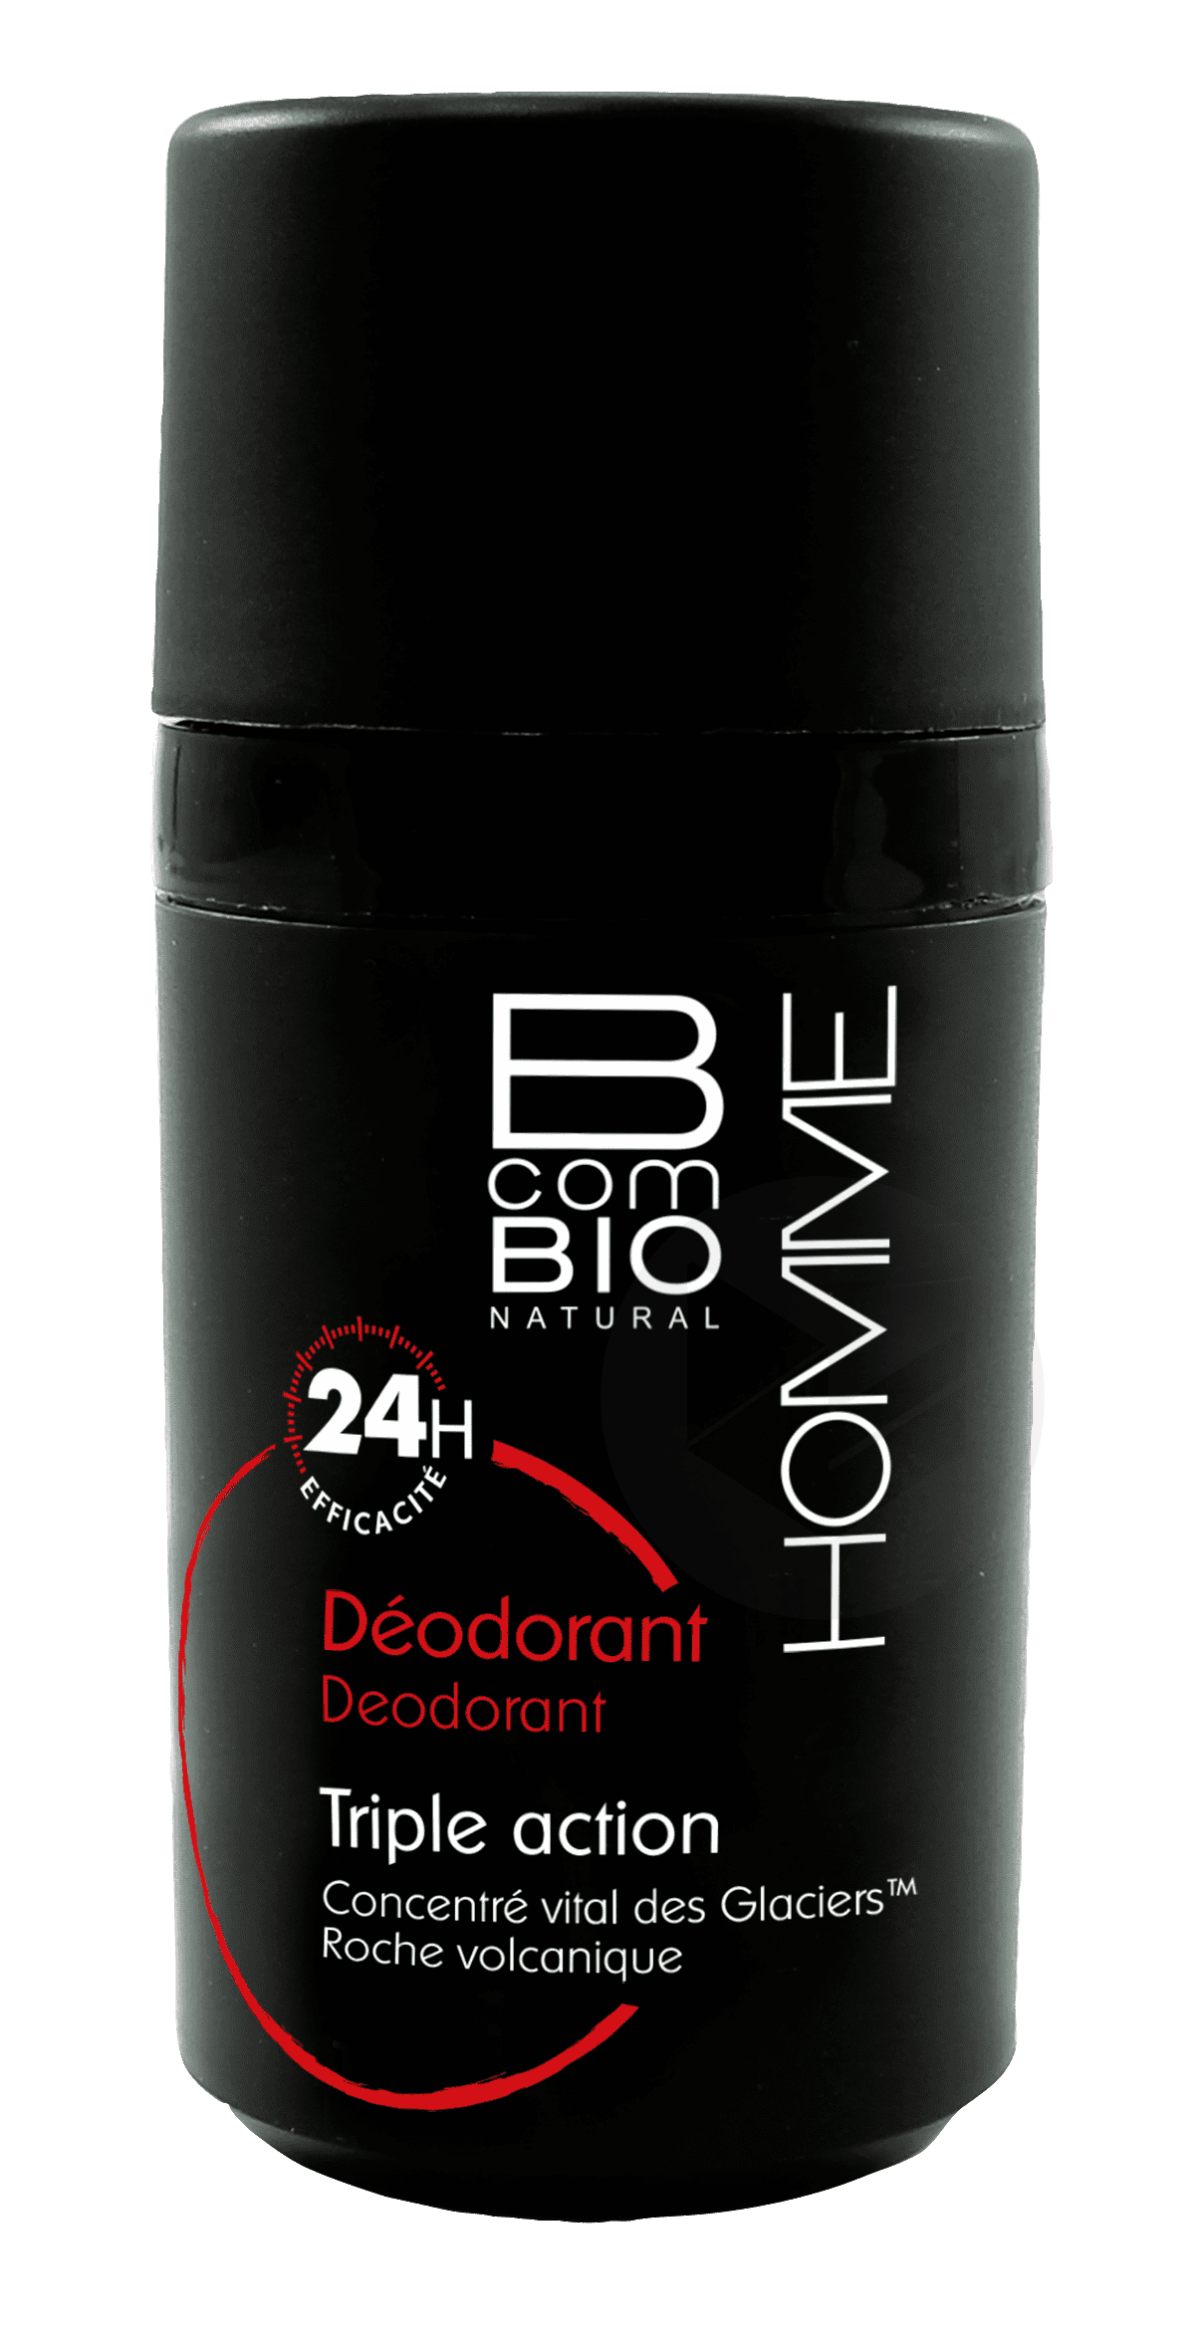 Deodorant 50ml